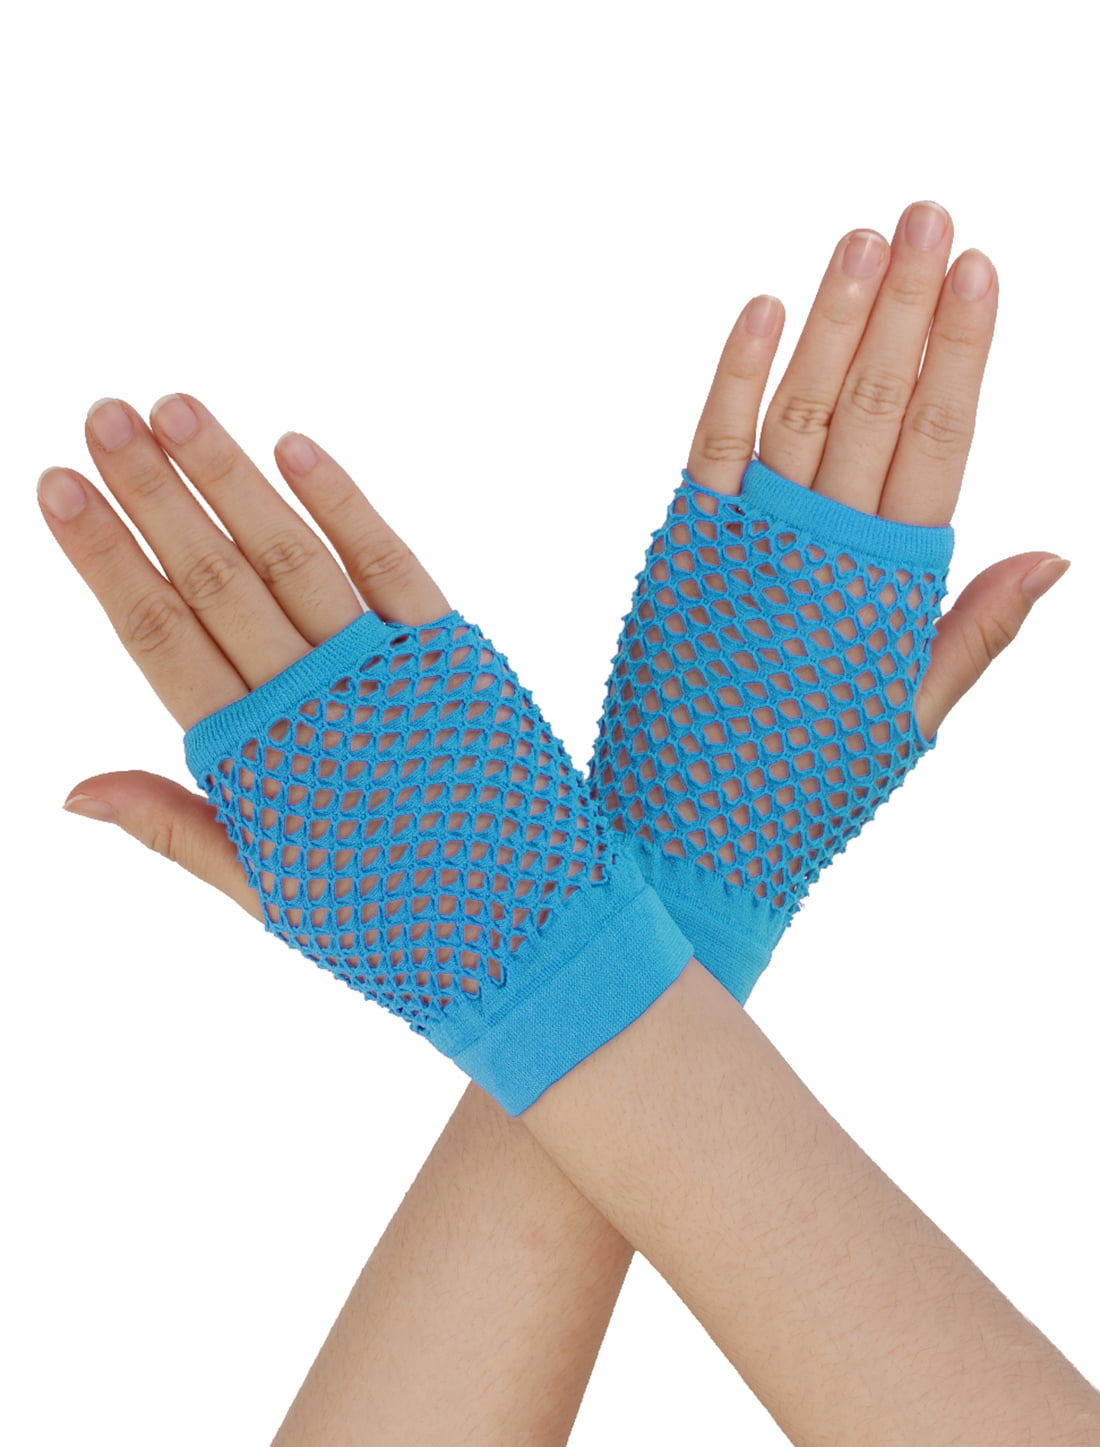 24 Pair 80s Themed Fishnet Fingerless Diva Wrist Gloves Neon Gloves Party Favors 